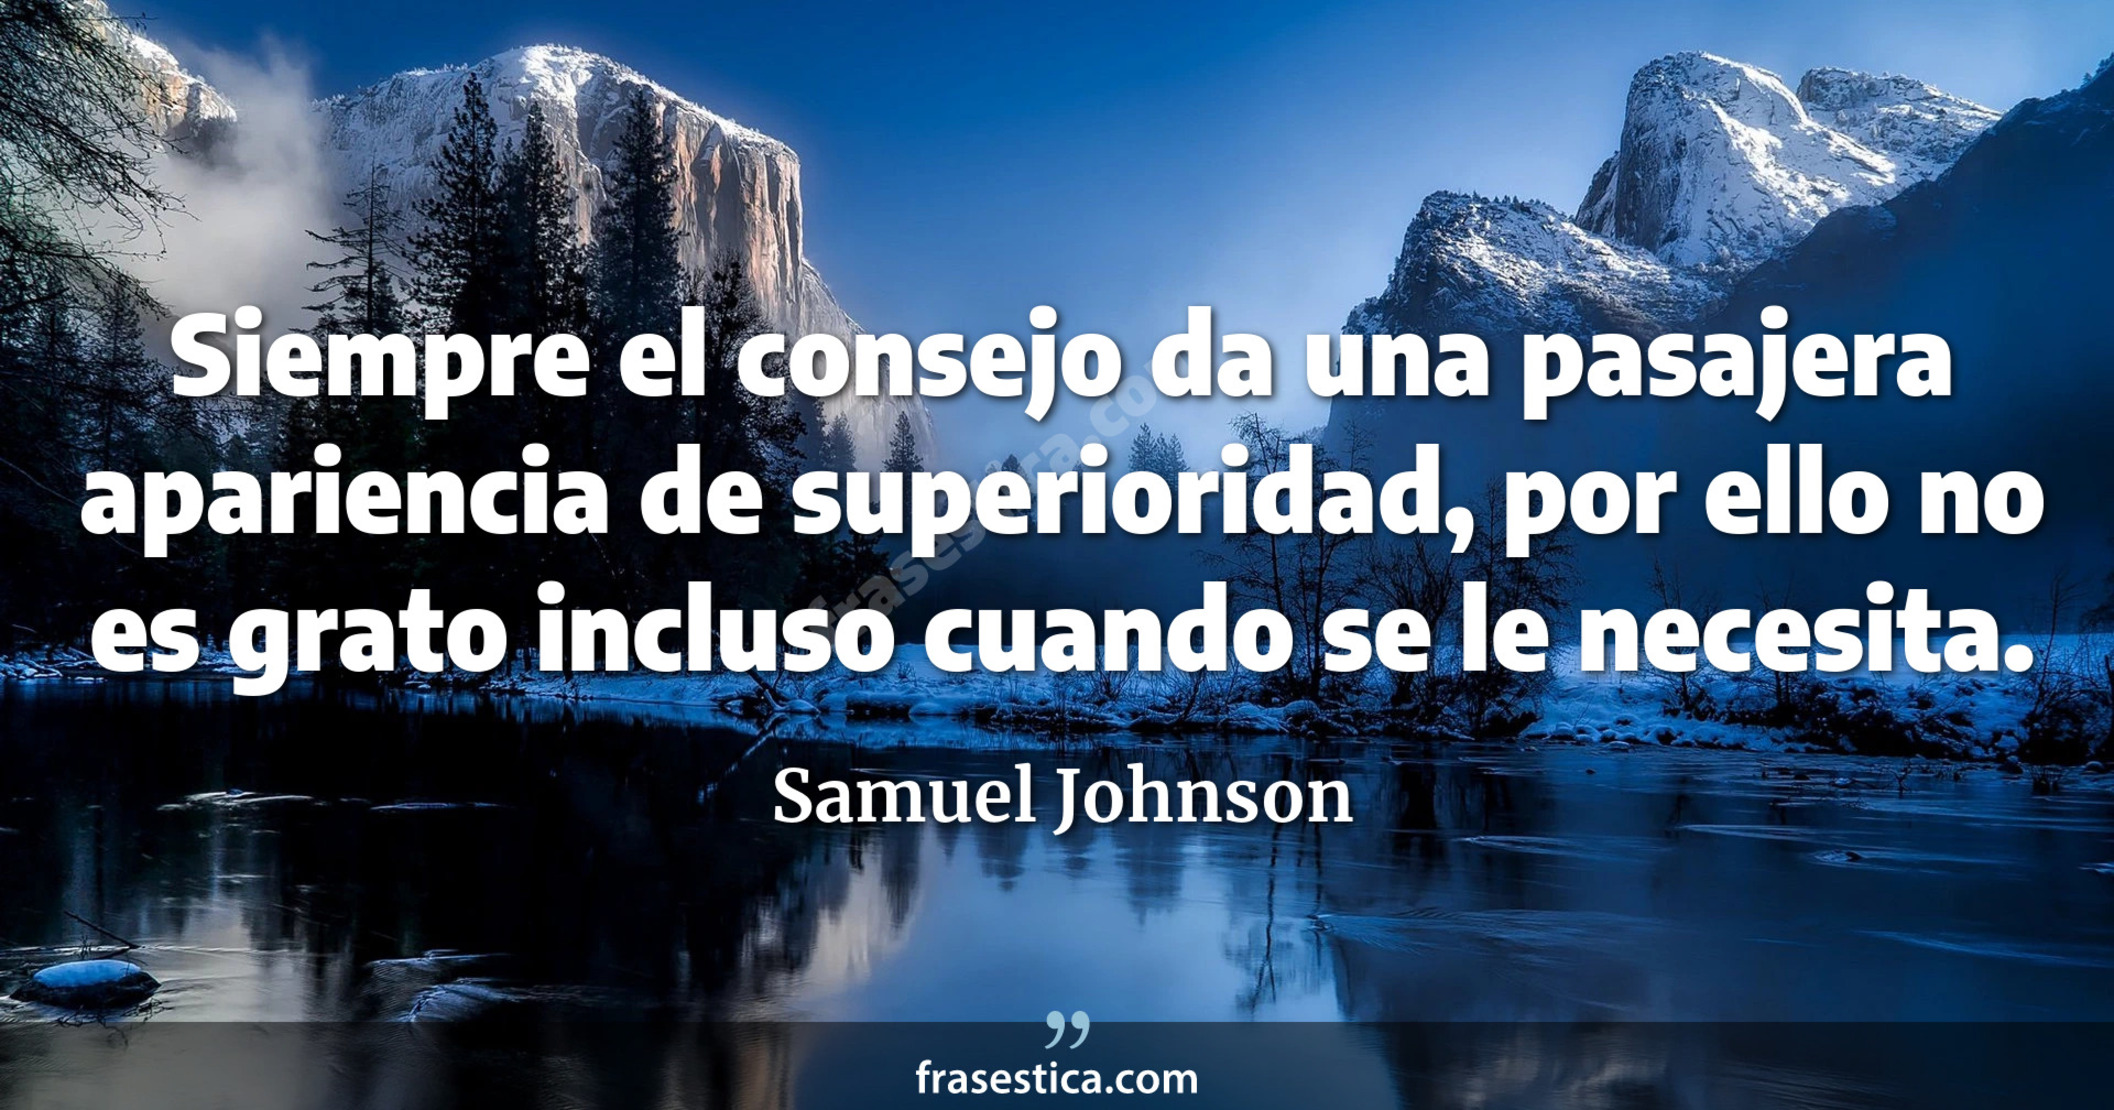 Siempre el consejo da una pasajera apariencia de superioridad, por ello no es grato incluso cuando se le necesita. - Samuel Johnson